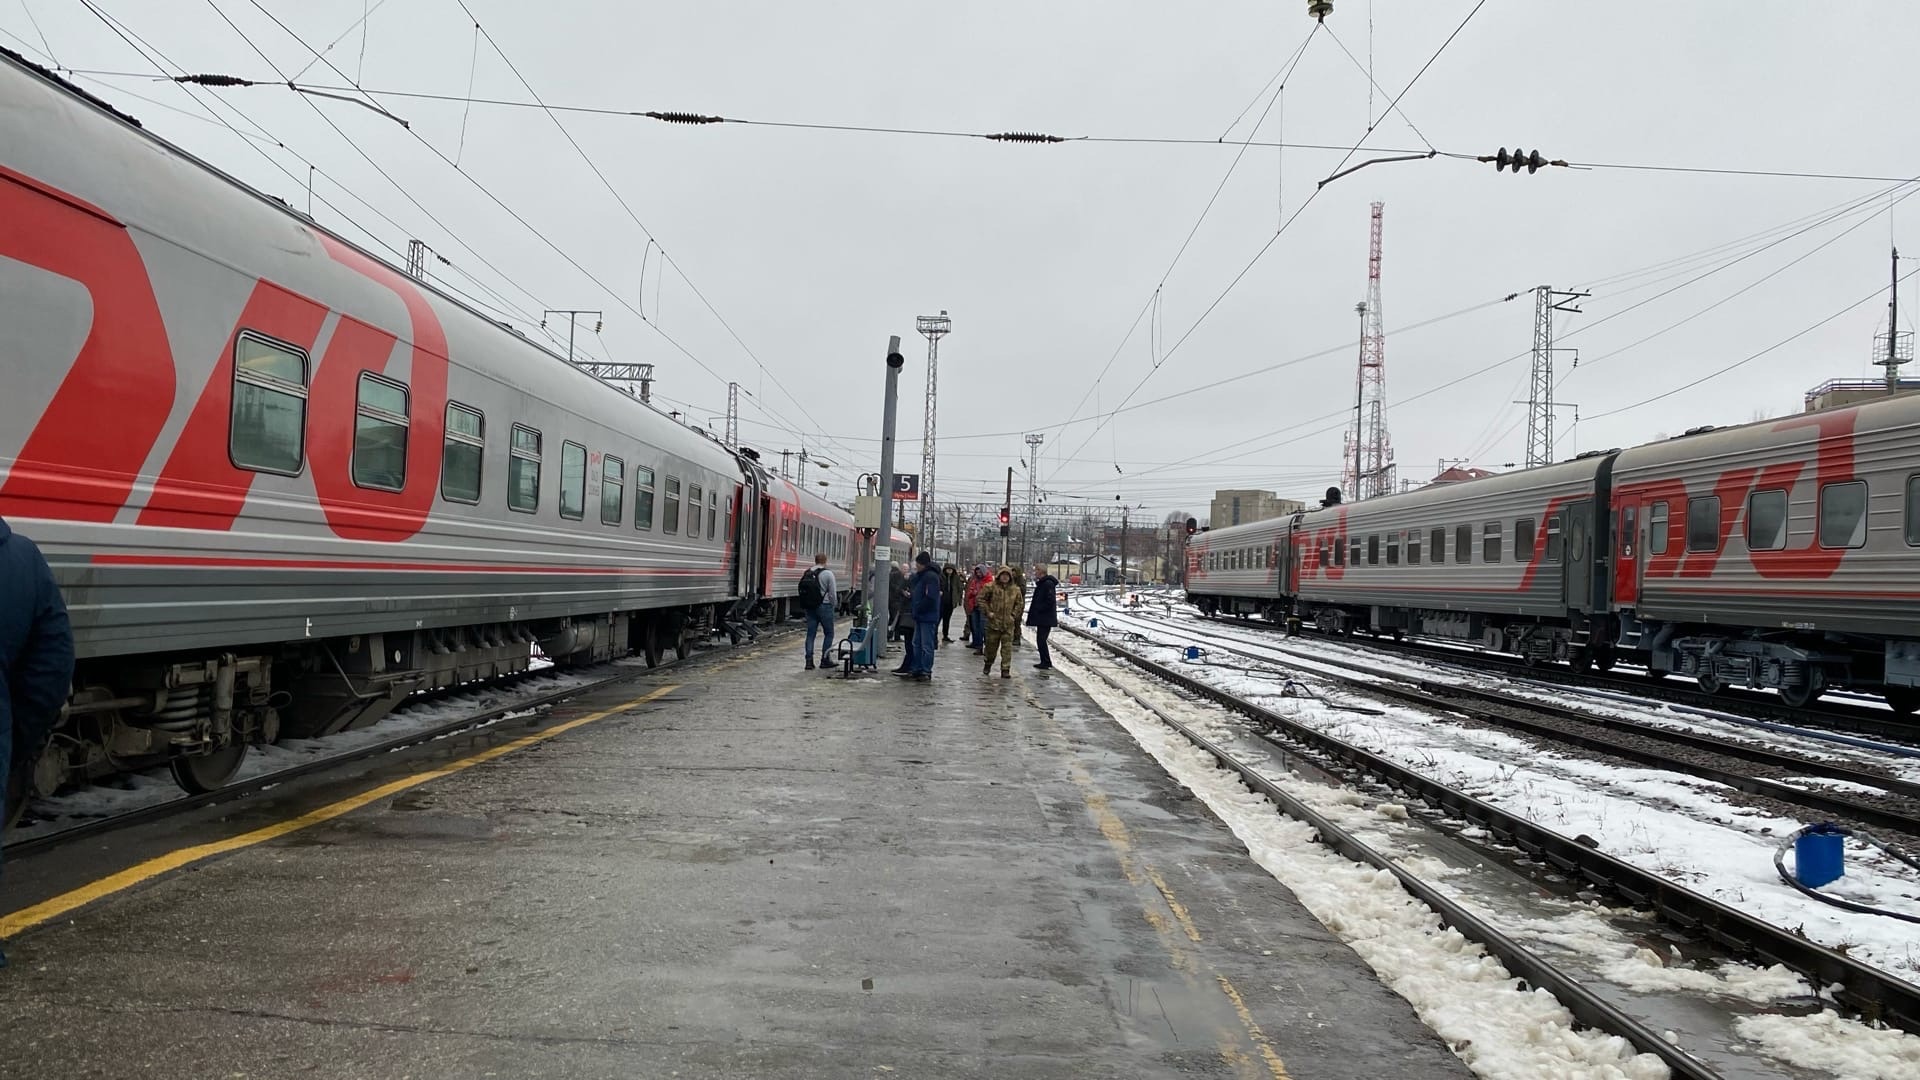 В Пензенской области вынесен приговор группе поджигателей железнодорожных объектов